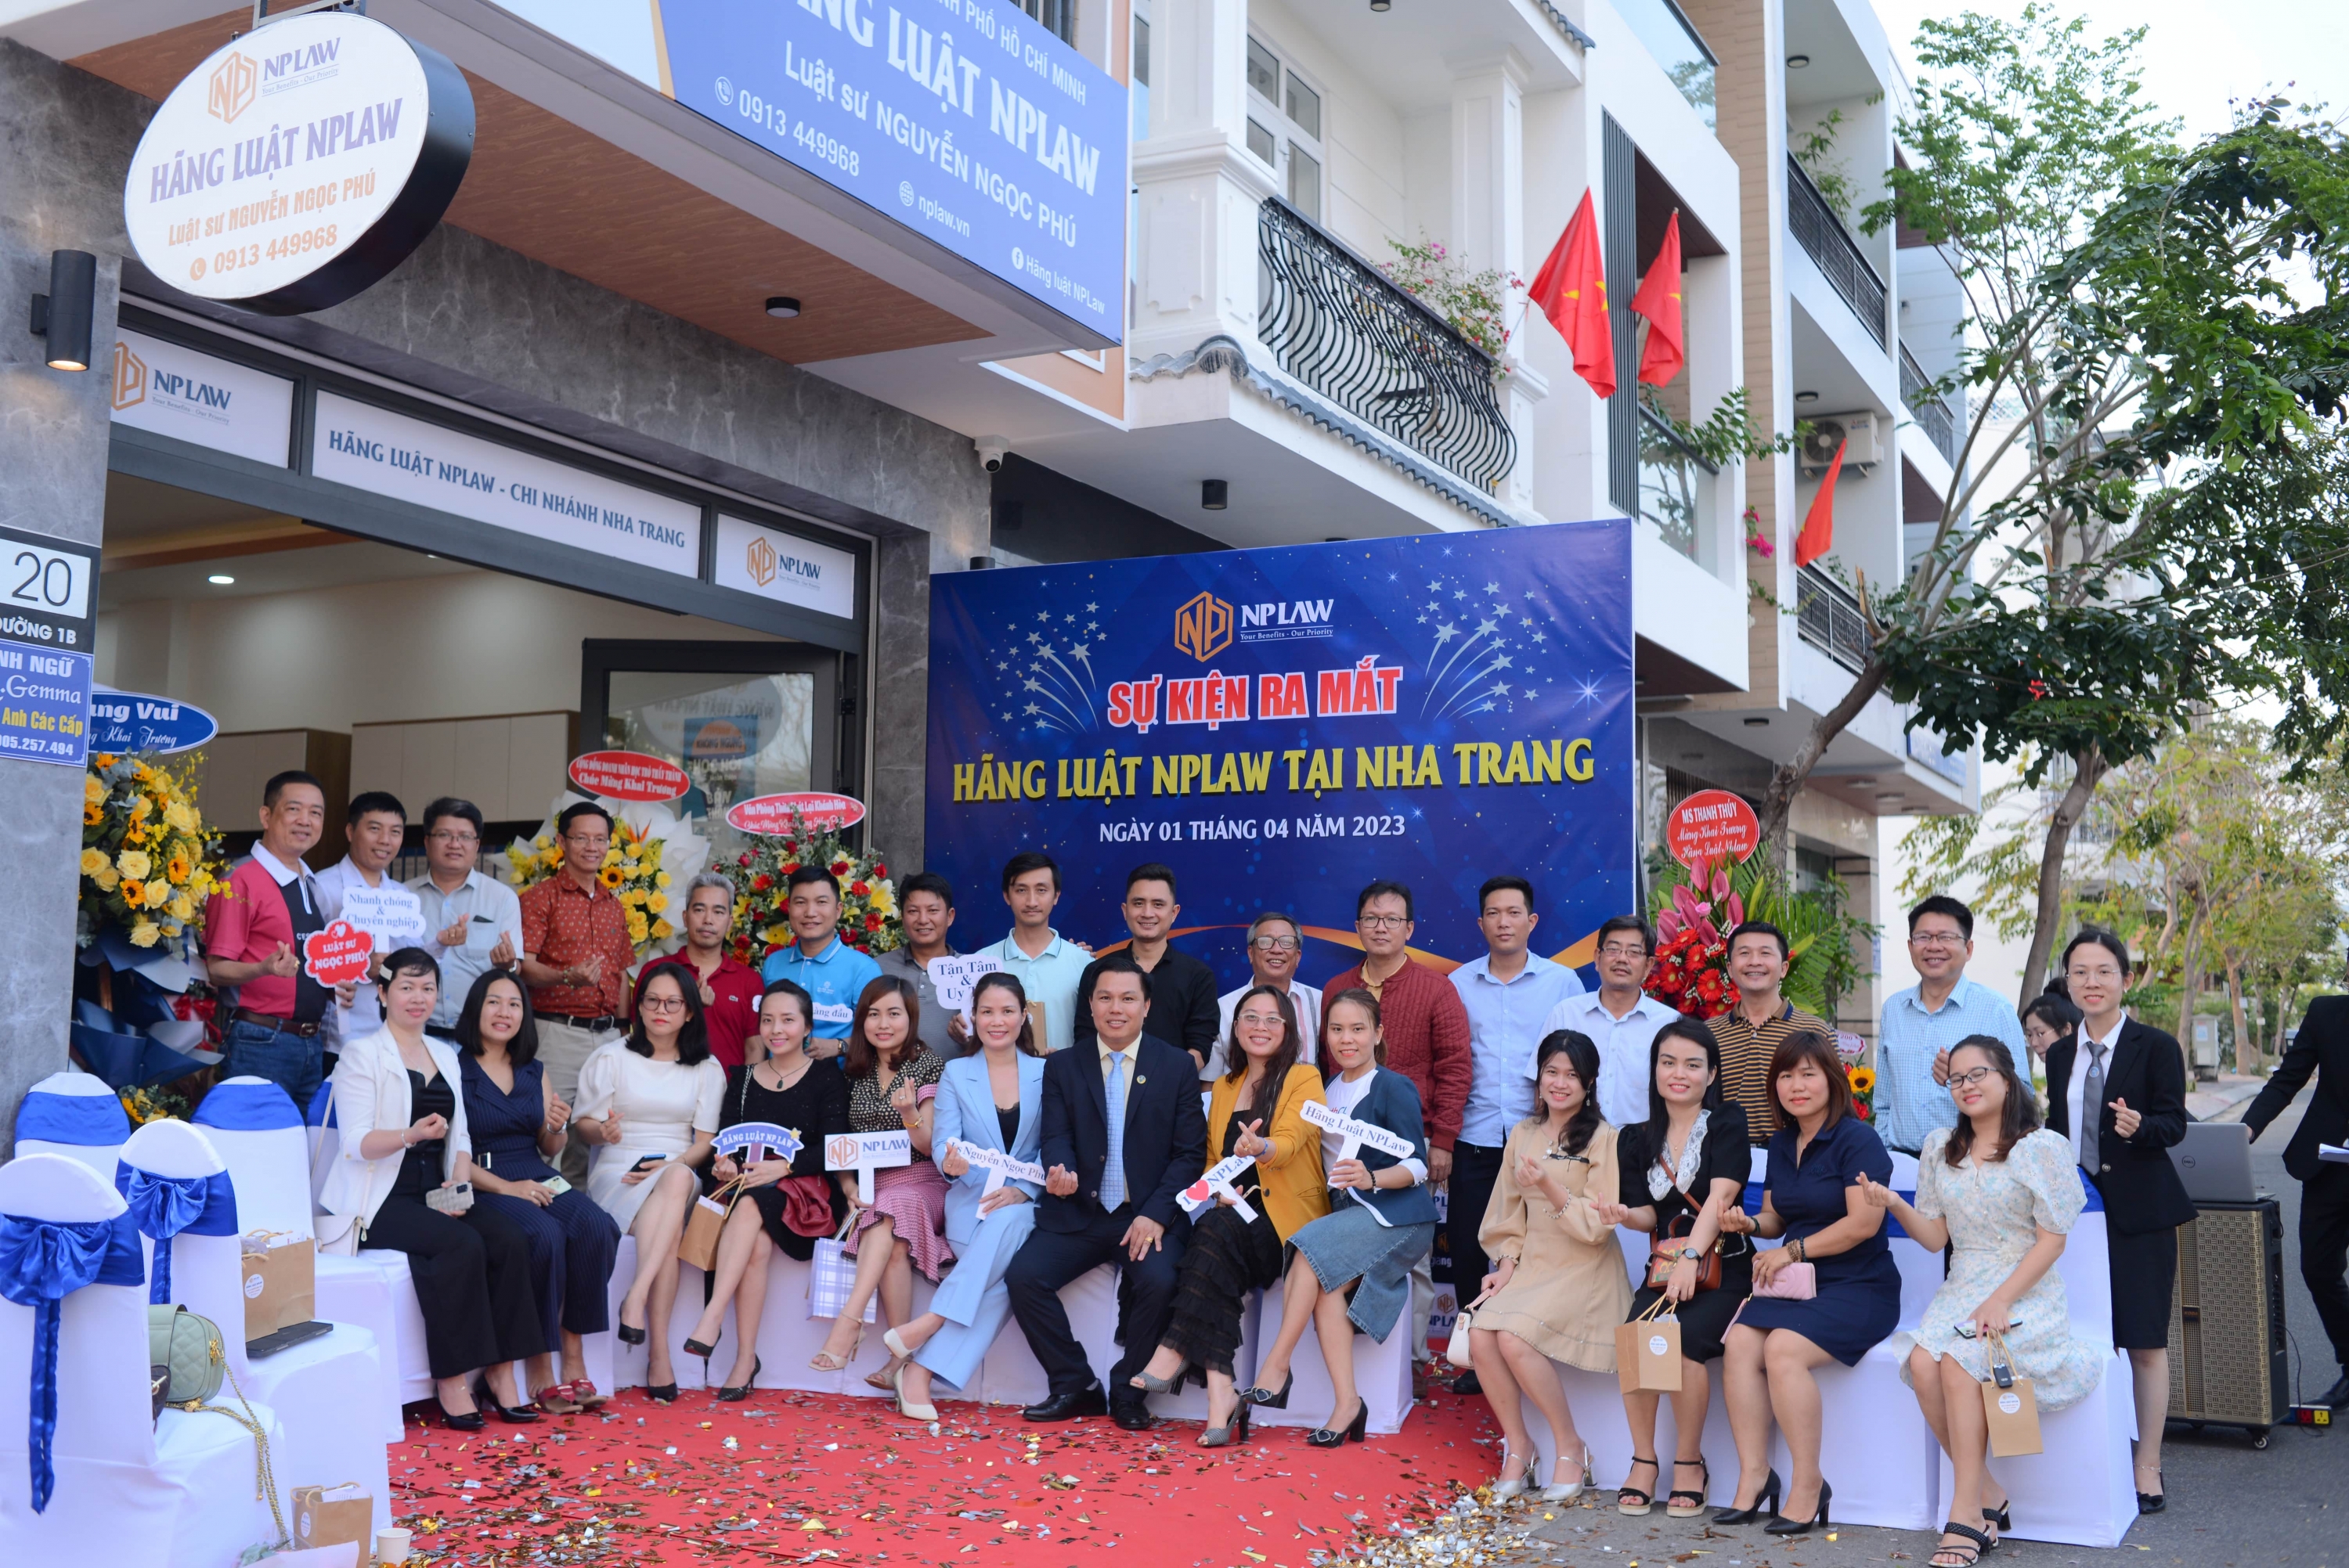 Hãng luật NPLaw tại Nha Trang